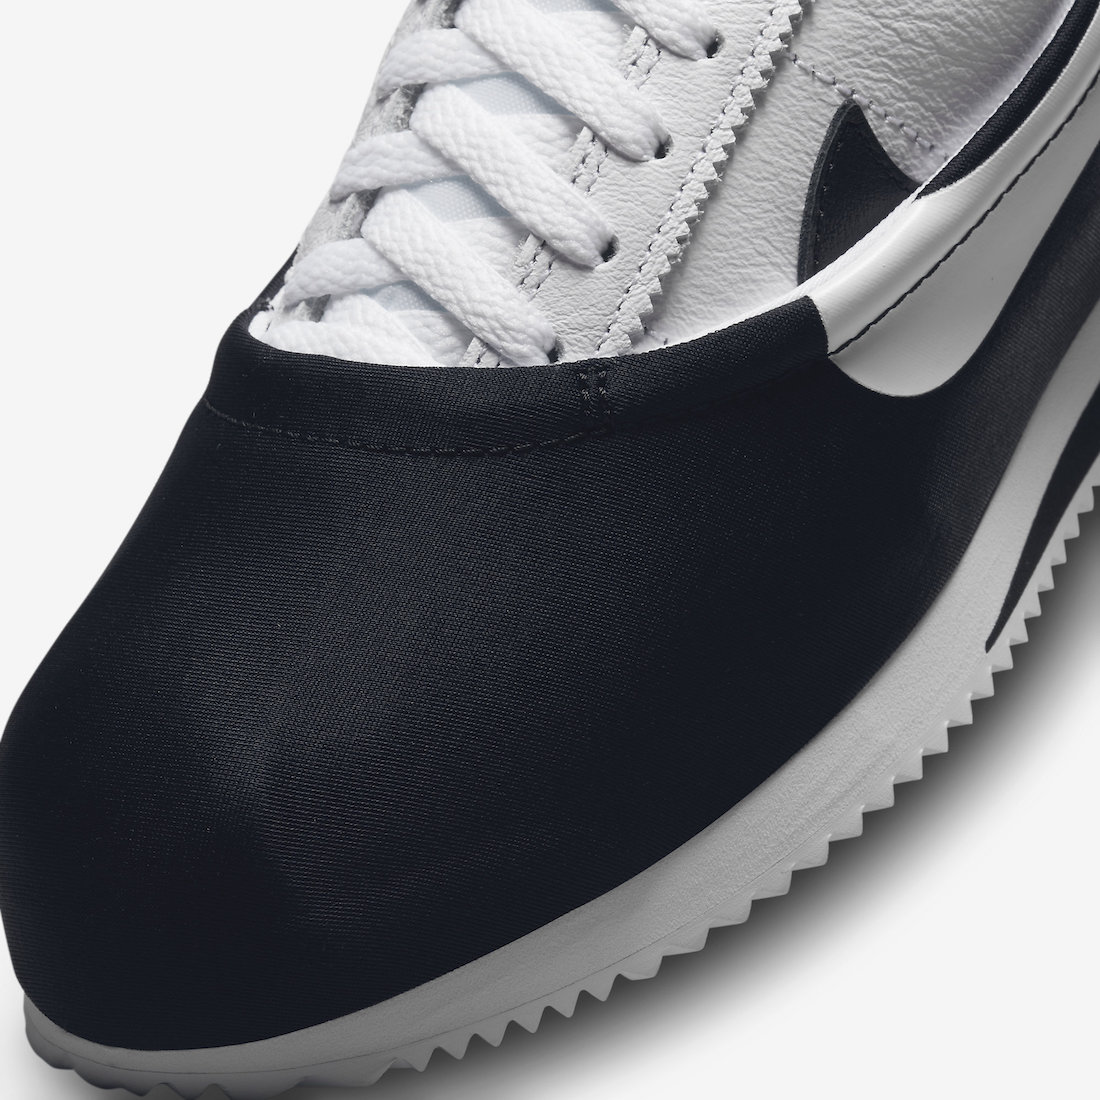 CLOT Nike Cortez Clotez DZ3239 002 Release Date 6